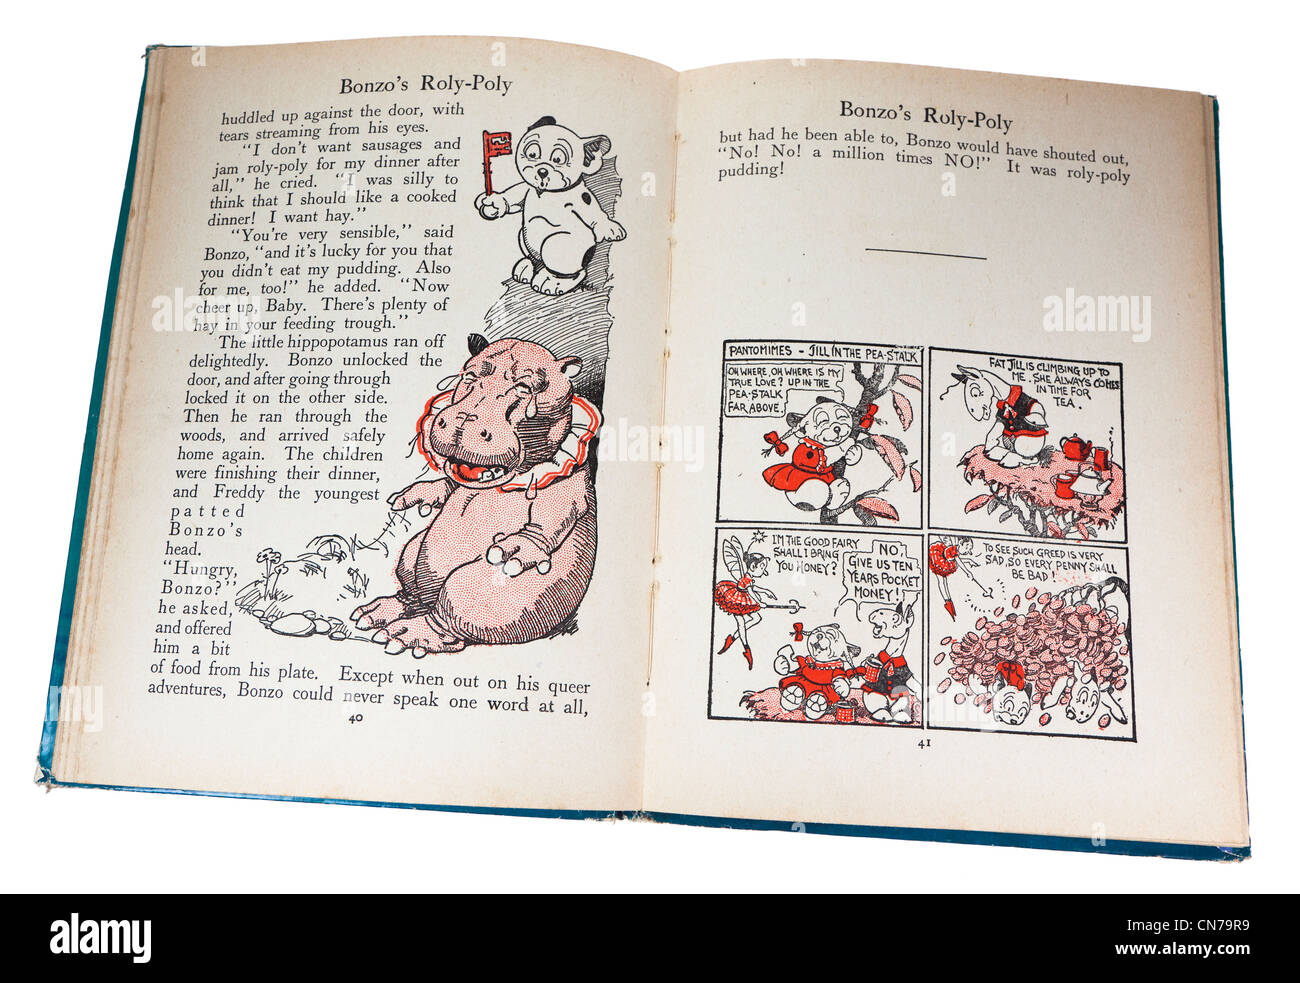 Storia illustrata dai bambini del bonzo Libro di racconti pubblicati nel 1930, REGNO UNITO Foto Stock